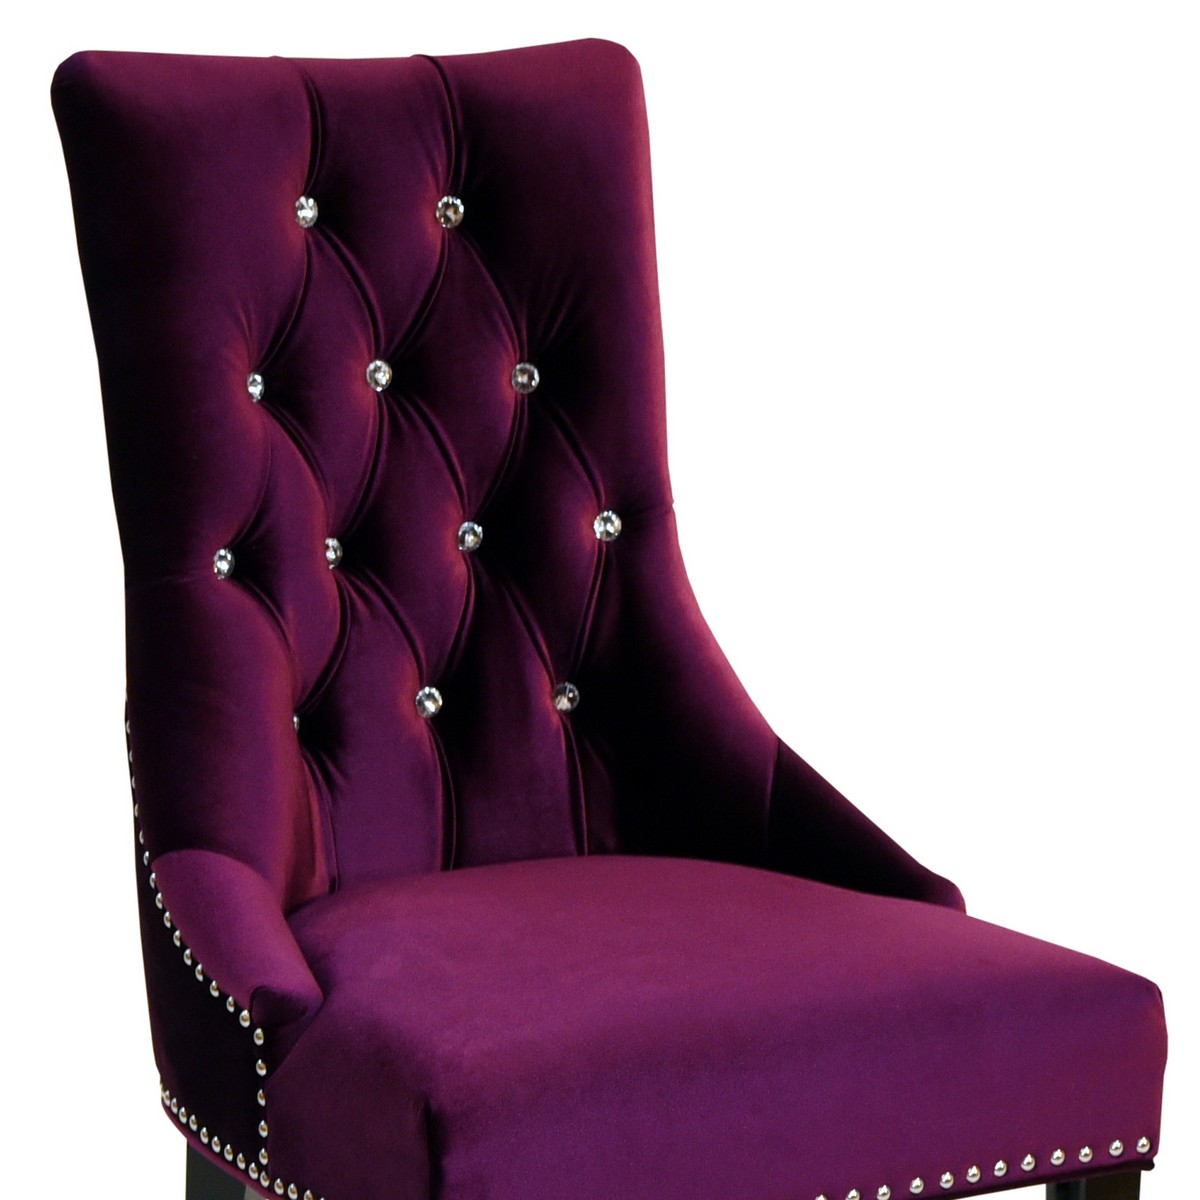 Armen Living Carlyle Side Chair in Leatheretterple Velvet